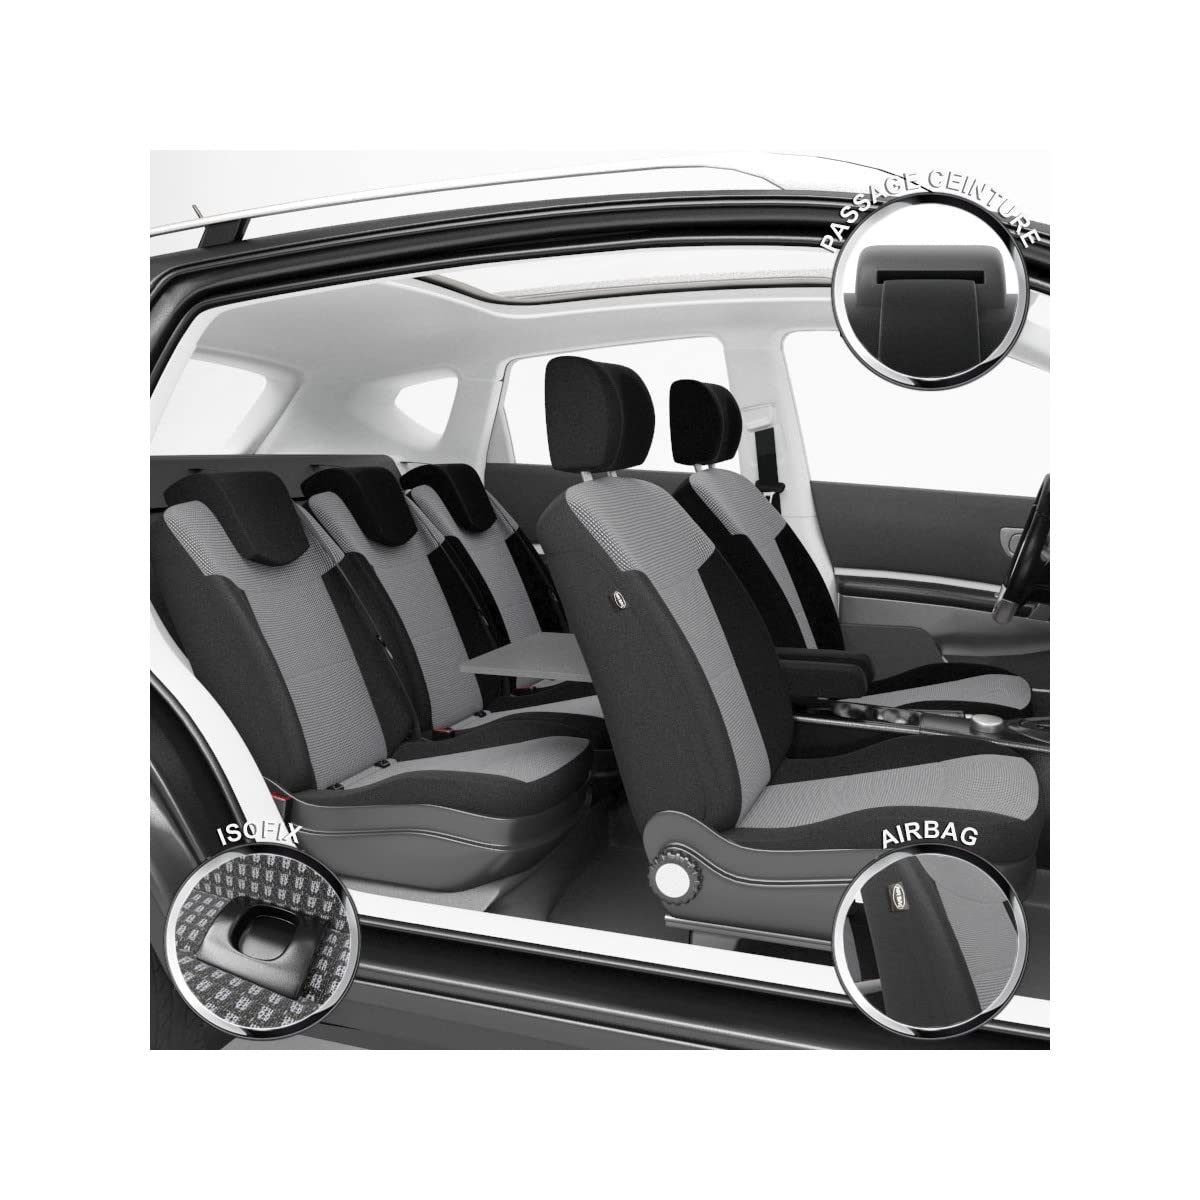 DBS Autositzbezüge - nach Maß - hochqualitative Fertigung - Schnelle Montage - Kompatibel mit Airbag - Isofix - 1011552 von DBS